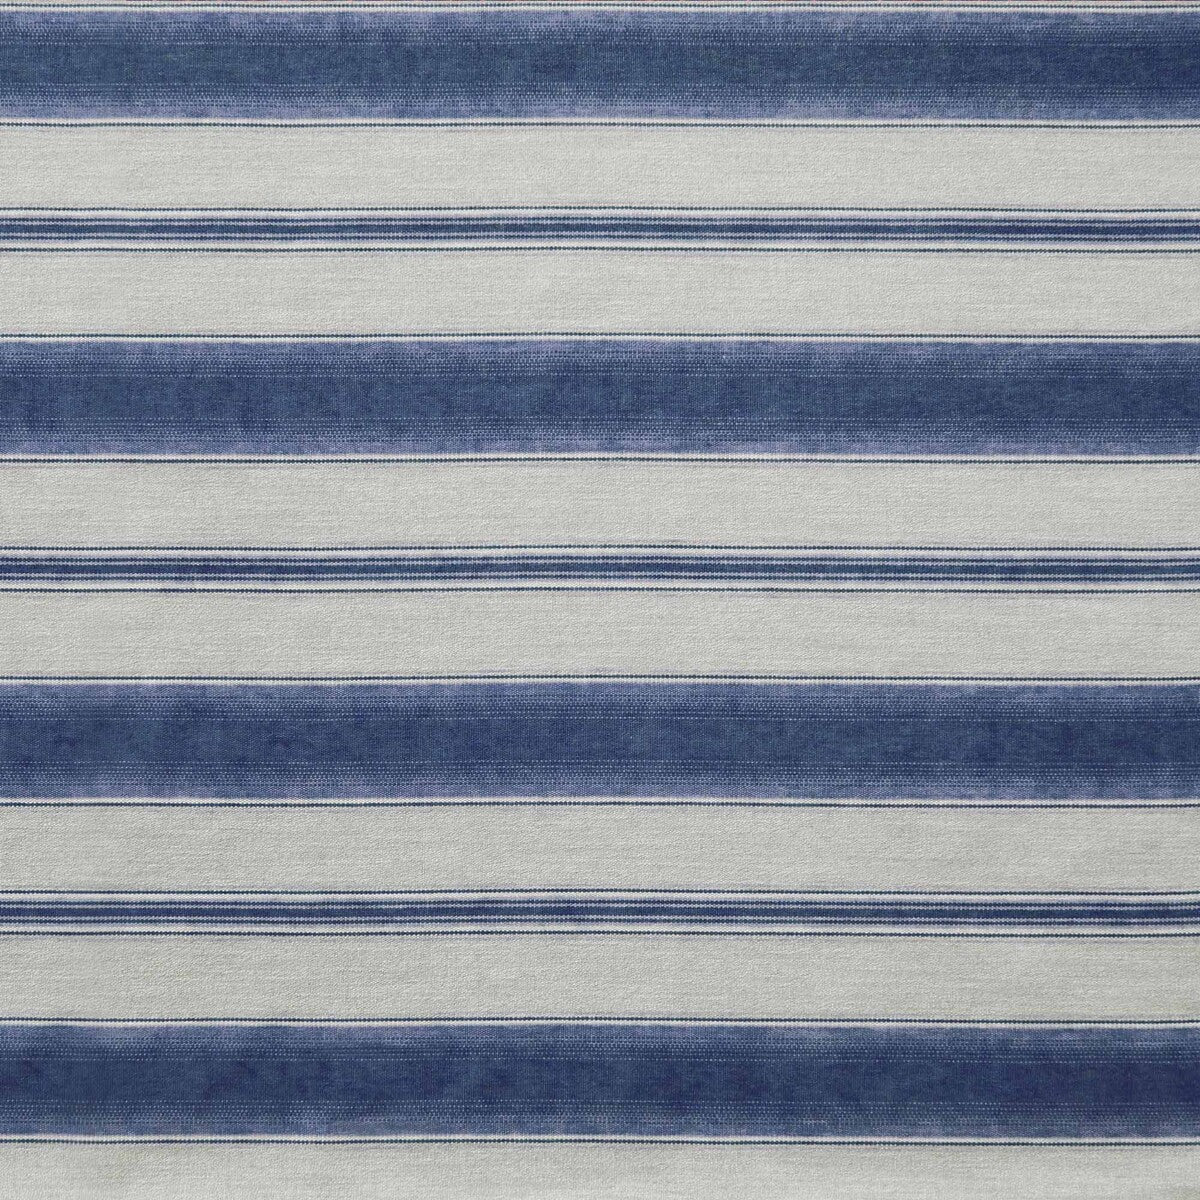 Teodosio fabric in azul color - pattern LCT1125.001.0 - by Gaston y Daniela in the Lorenzo Castillo IX Hesperia collection